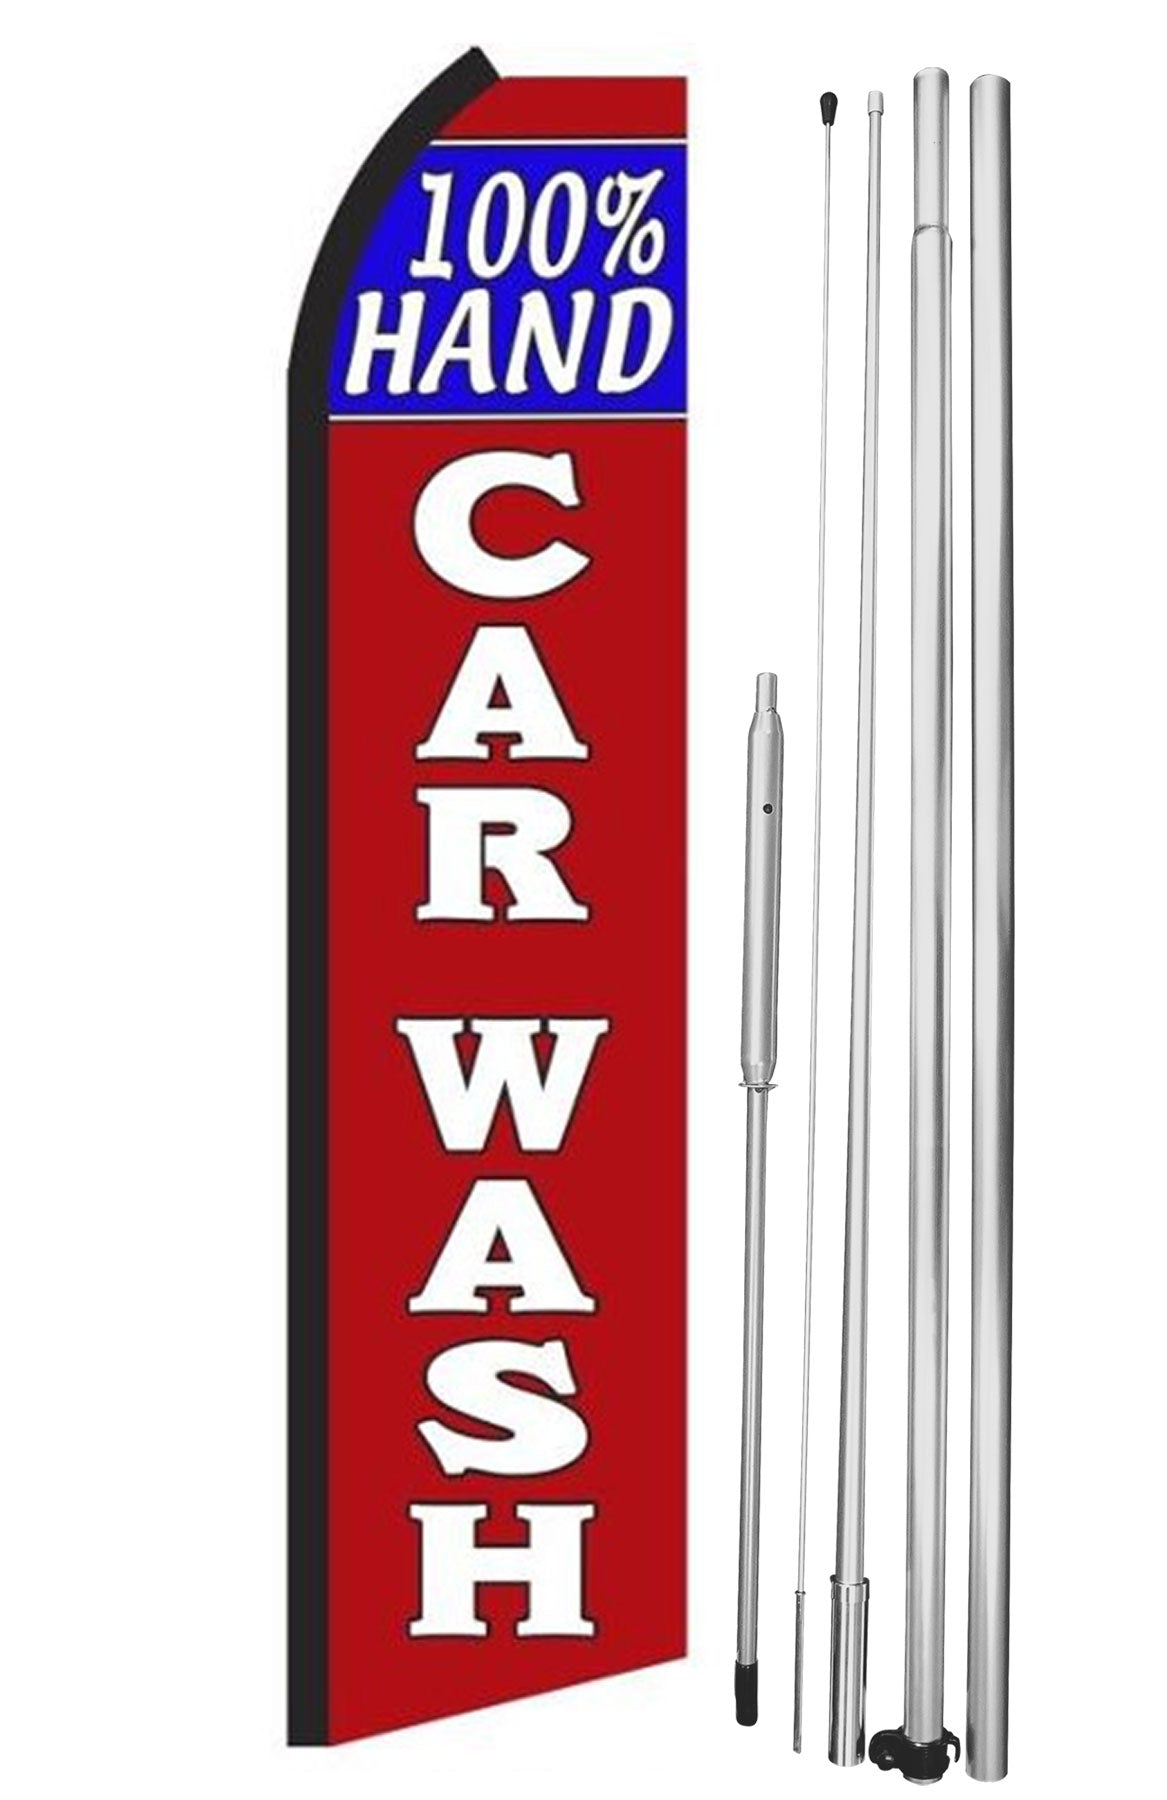 100%-Hand Carwash